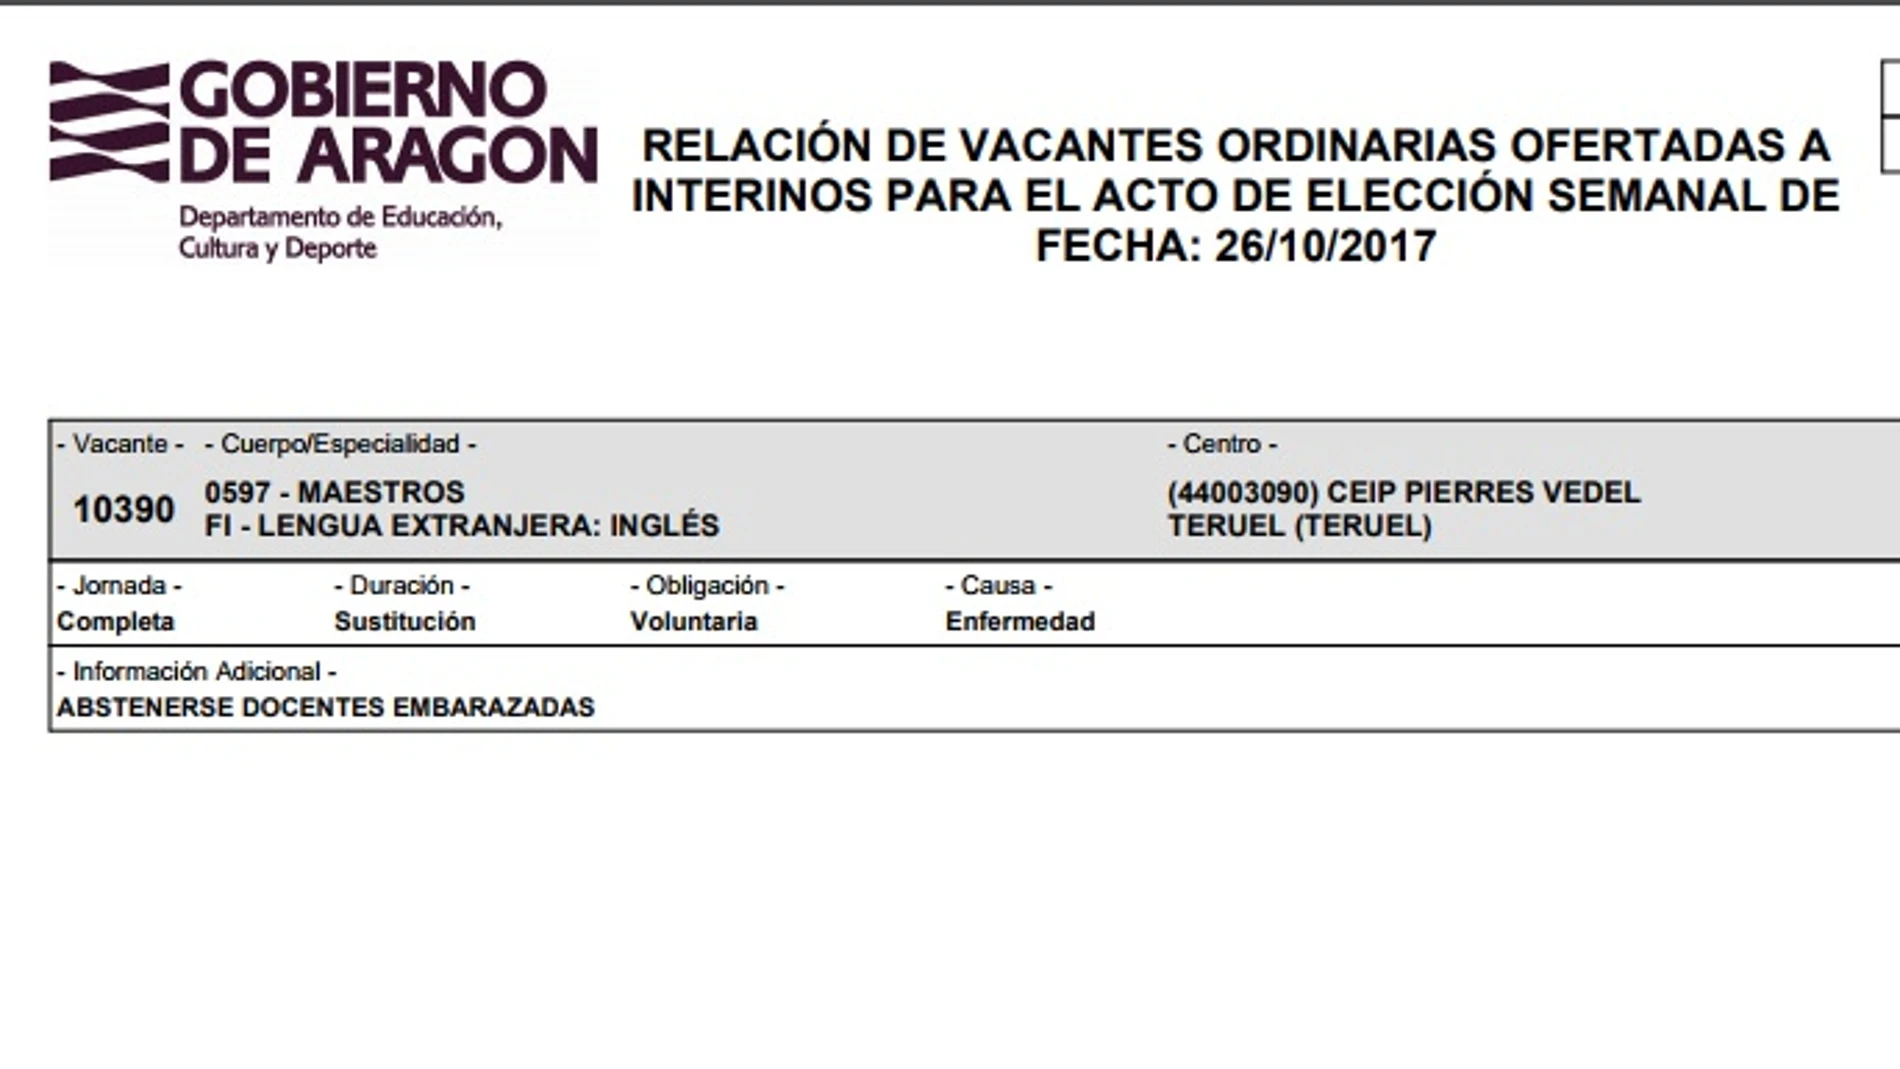 Oferta de empleo publicada por el departamento de Educación Cultura y Deporte del Gobierno de Aragón